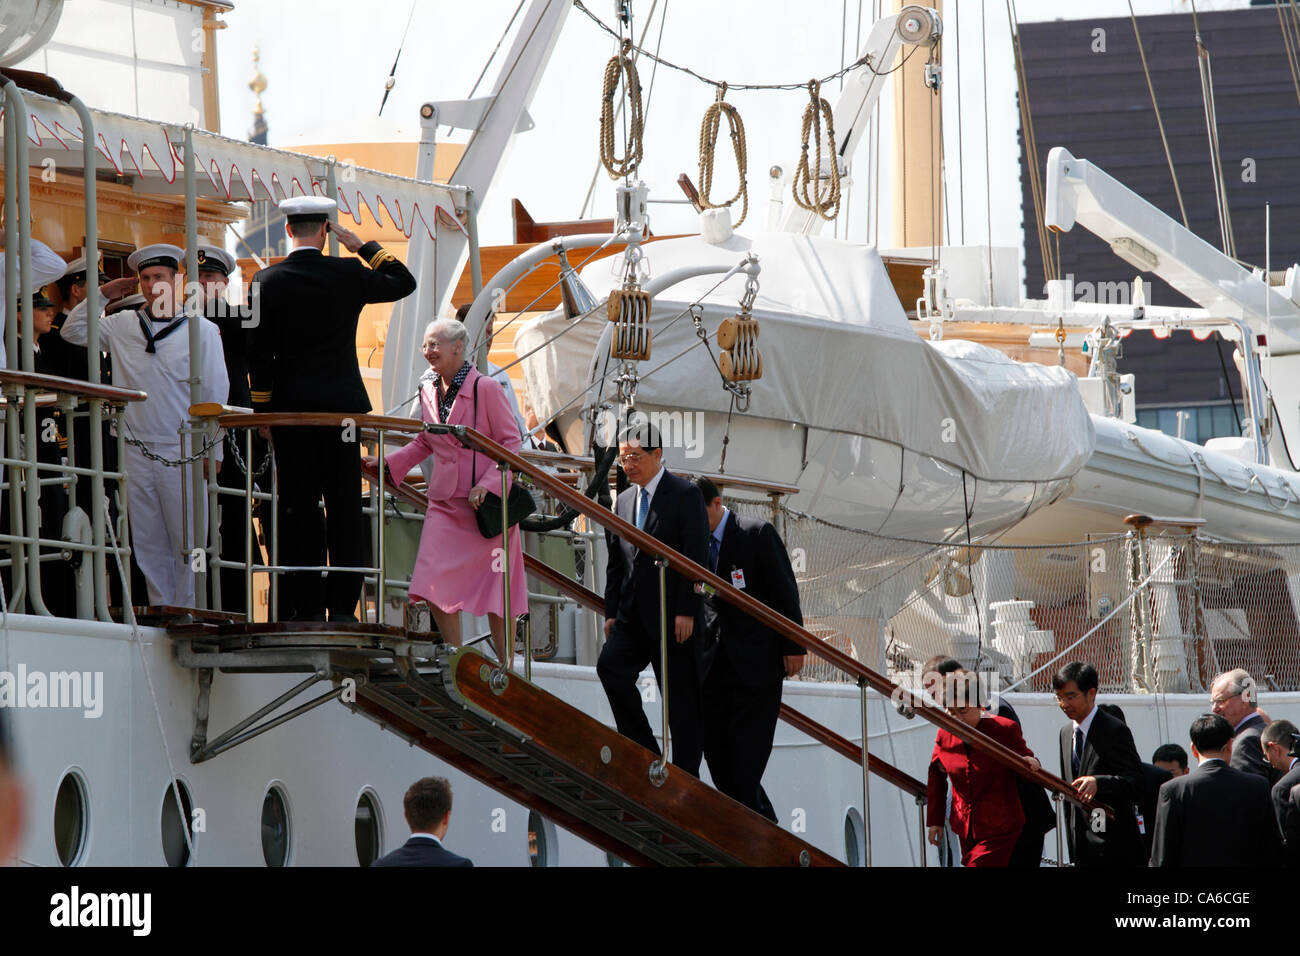 Juni Freitag 15, 2012 - Besuch Königin Margrethe II. von Dänemark und des chinesischen Präsidenten Hu Jintao und seine Frau besteigen die königliche dänische Yacht HDMY Dannebrog am Amaliehaven nahe dem Schloss Amalienborg im Hafen von Kopenhagen für eine kurze geführte Rundfahrt im Hafen auf der offiziellen Dänemark. Stockfoto